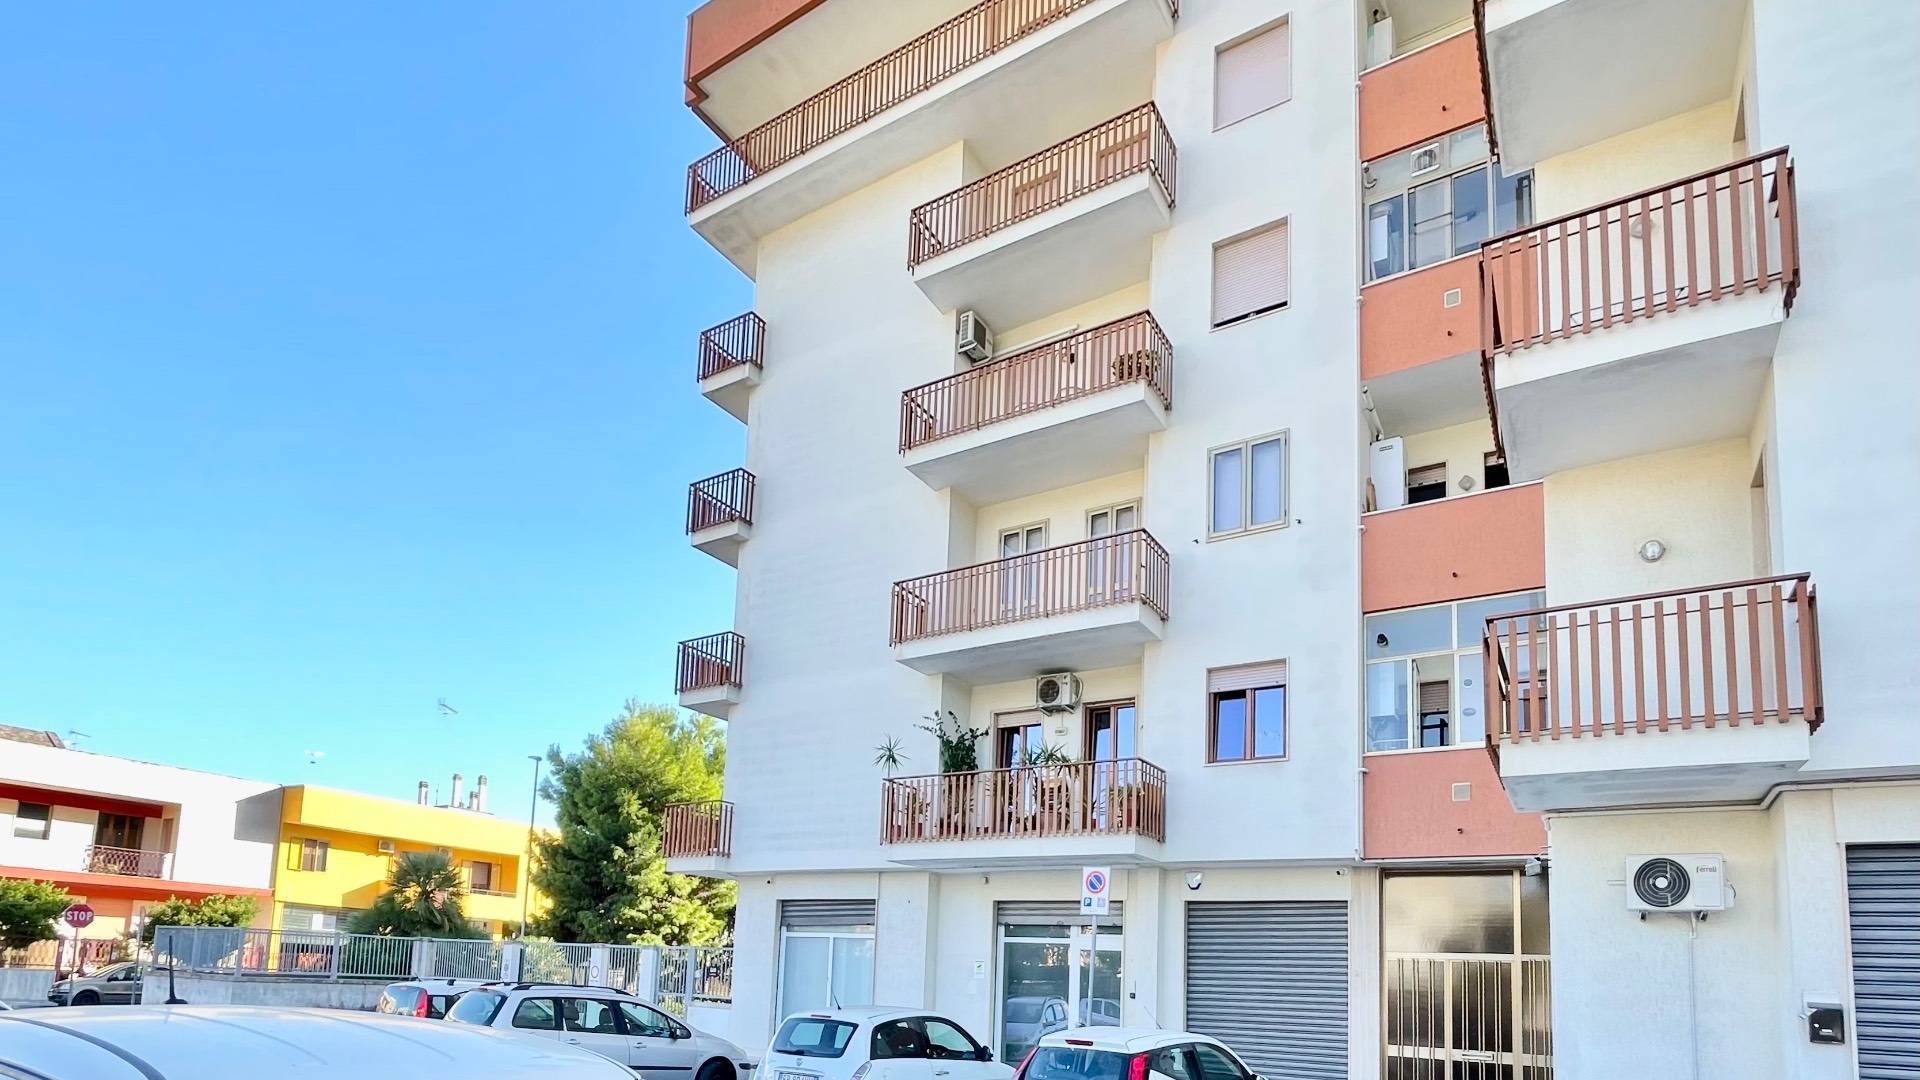 Appartamento in vendita a Lecce, 6 locali, prezzo € 148.000 | PortaleAgenzieImmobiliari.it